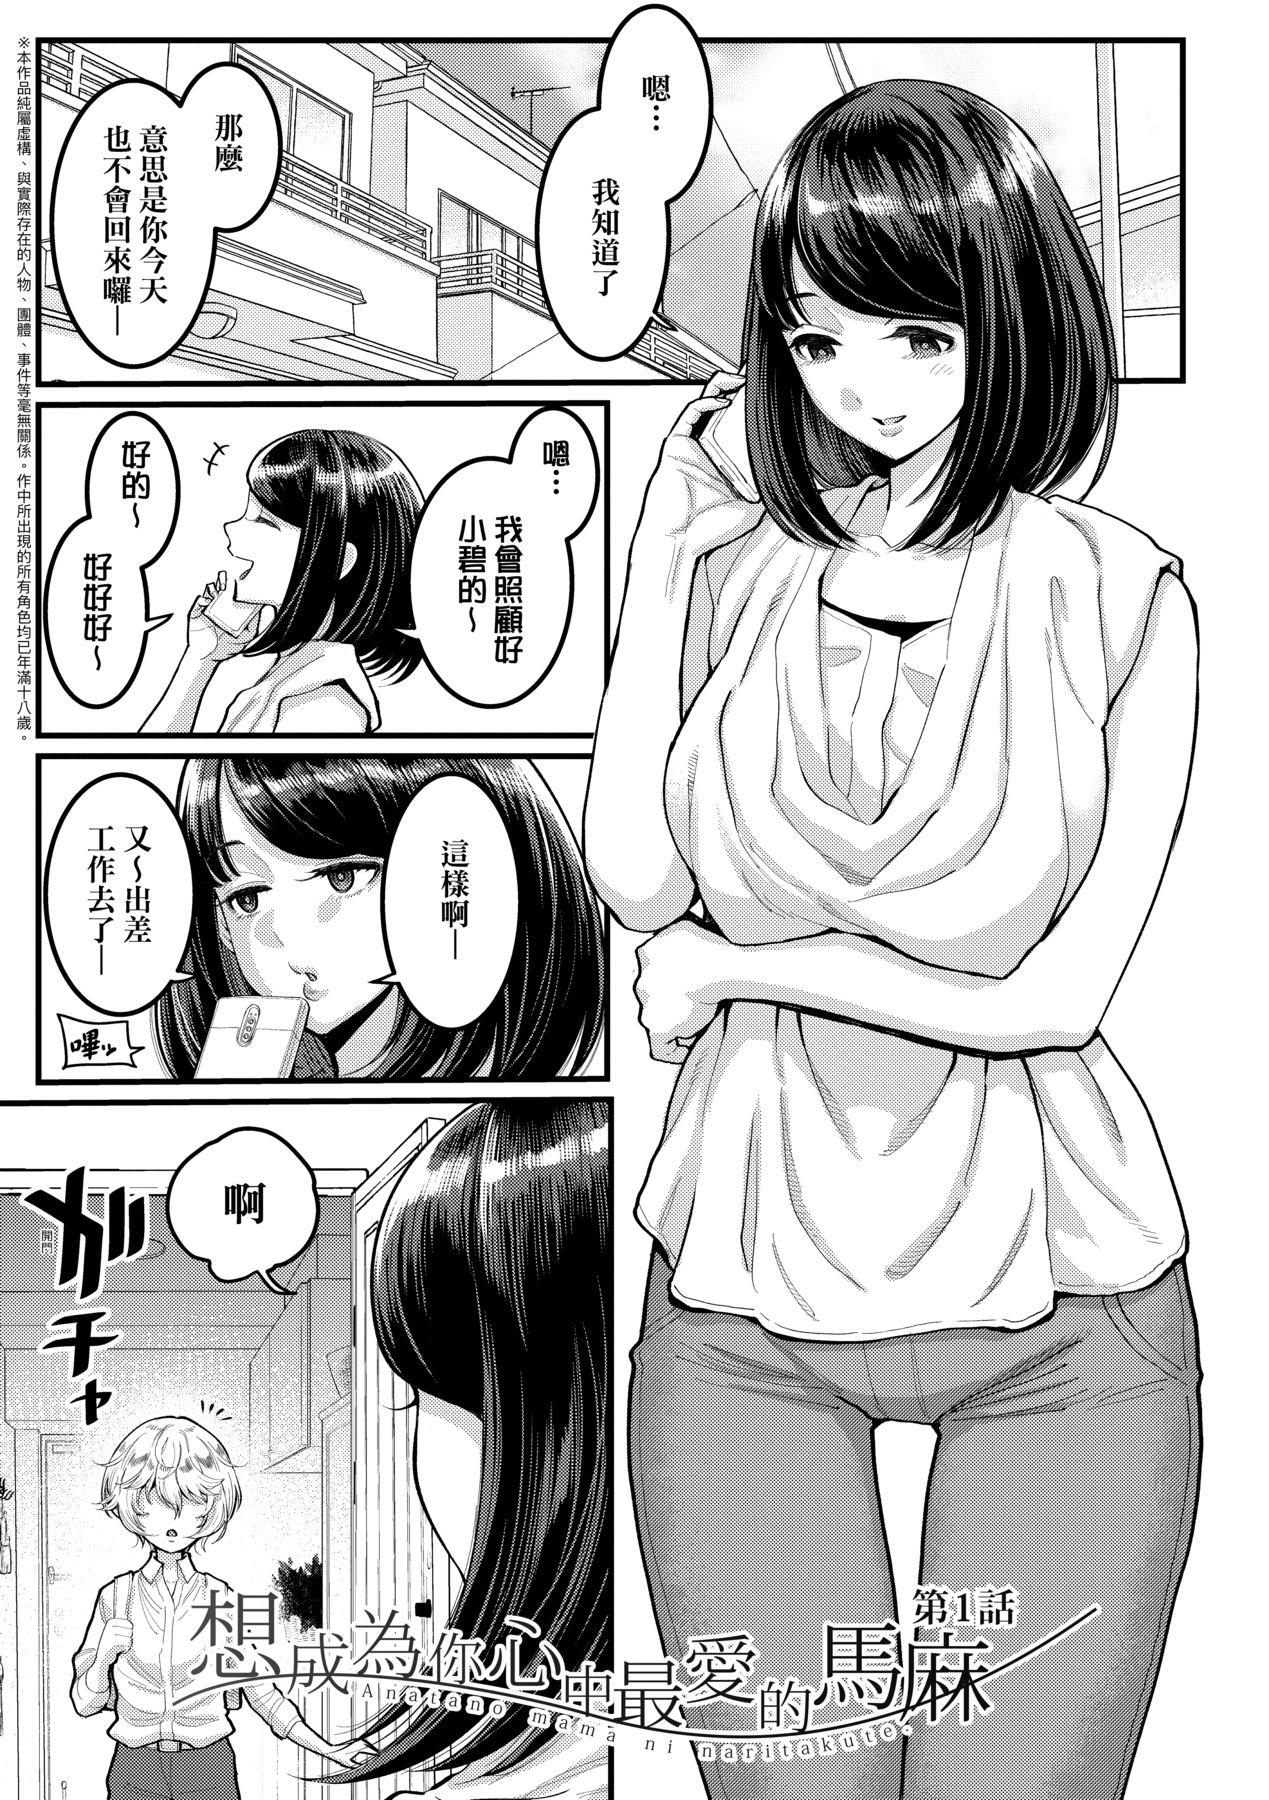 Tit Anata no Mama ni Naritakute - I want to be your real mom. | 想成為你心中最愛的馬麻 Polla - Page 6